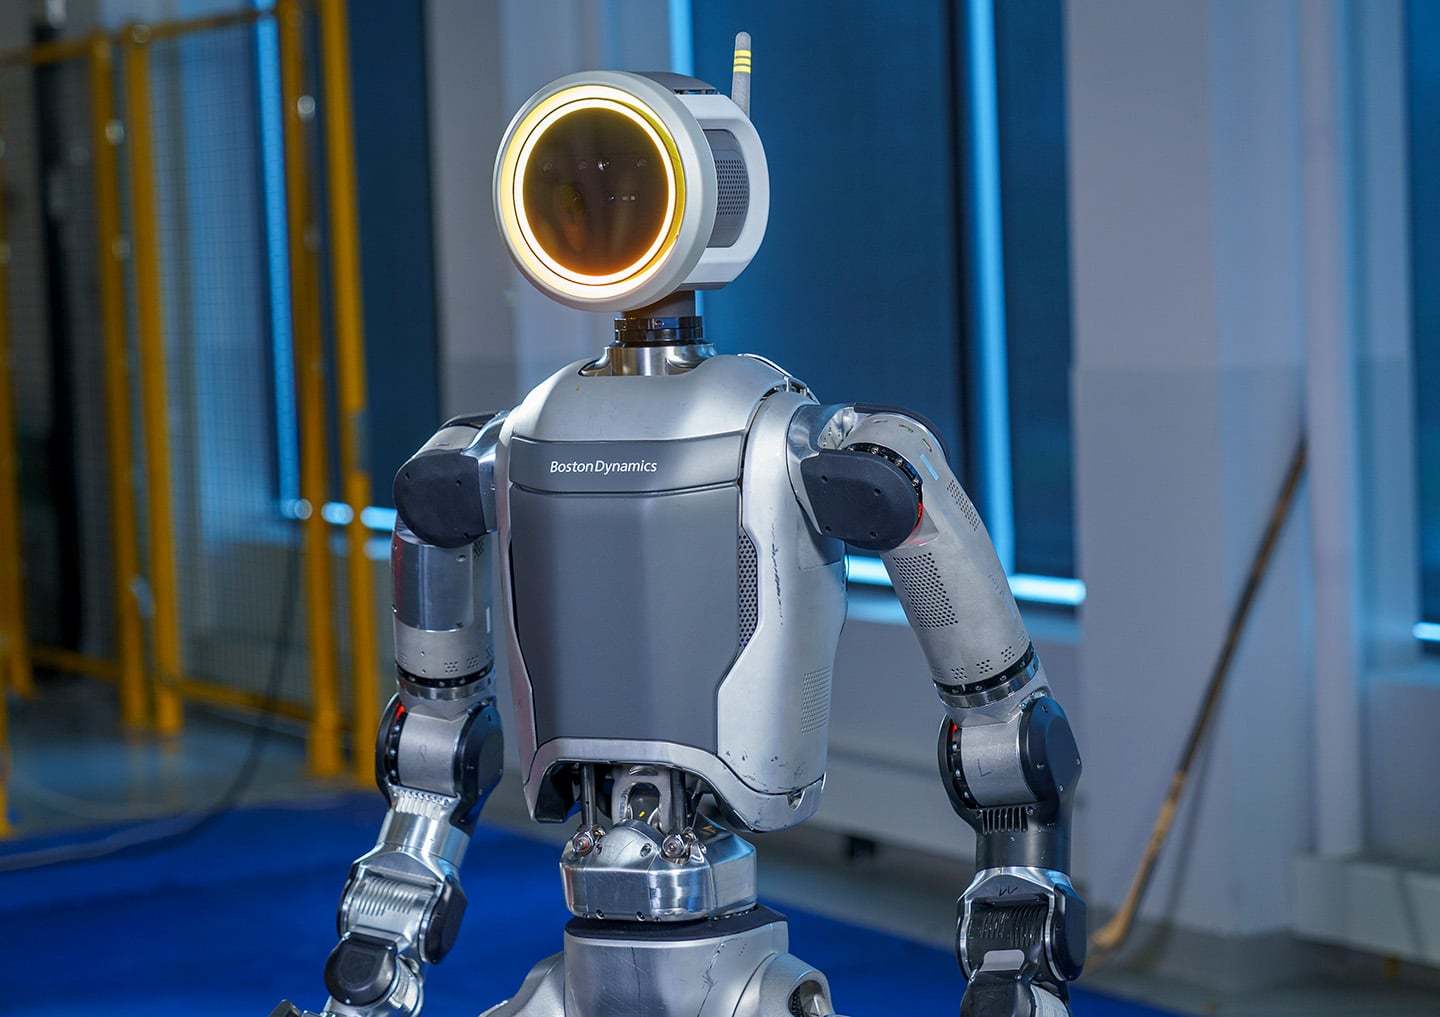 Boston Dynamics retira su robot Atlas y lo sustituye por una nueva versión mejorada